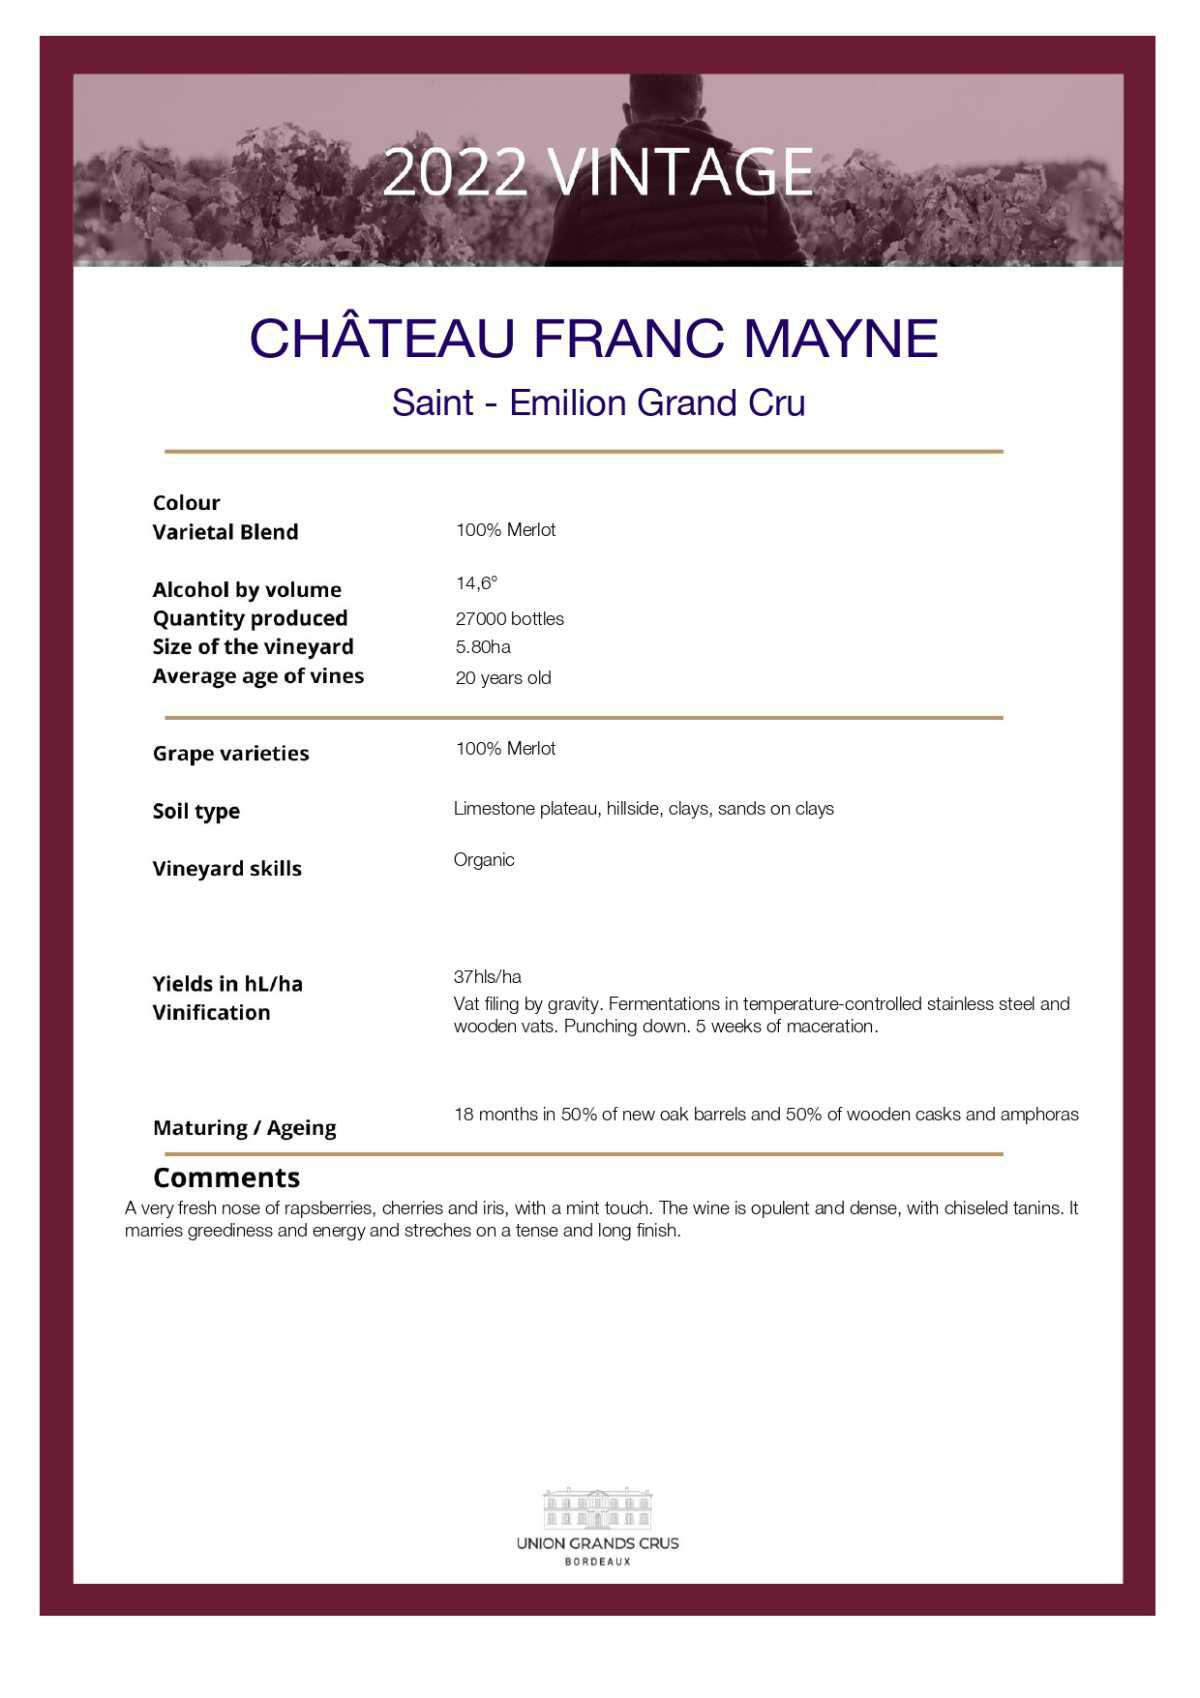  Château Franc Mayne